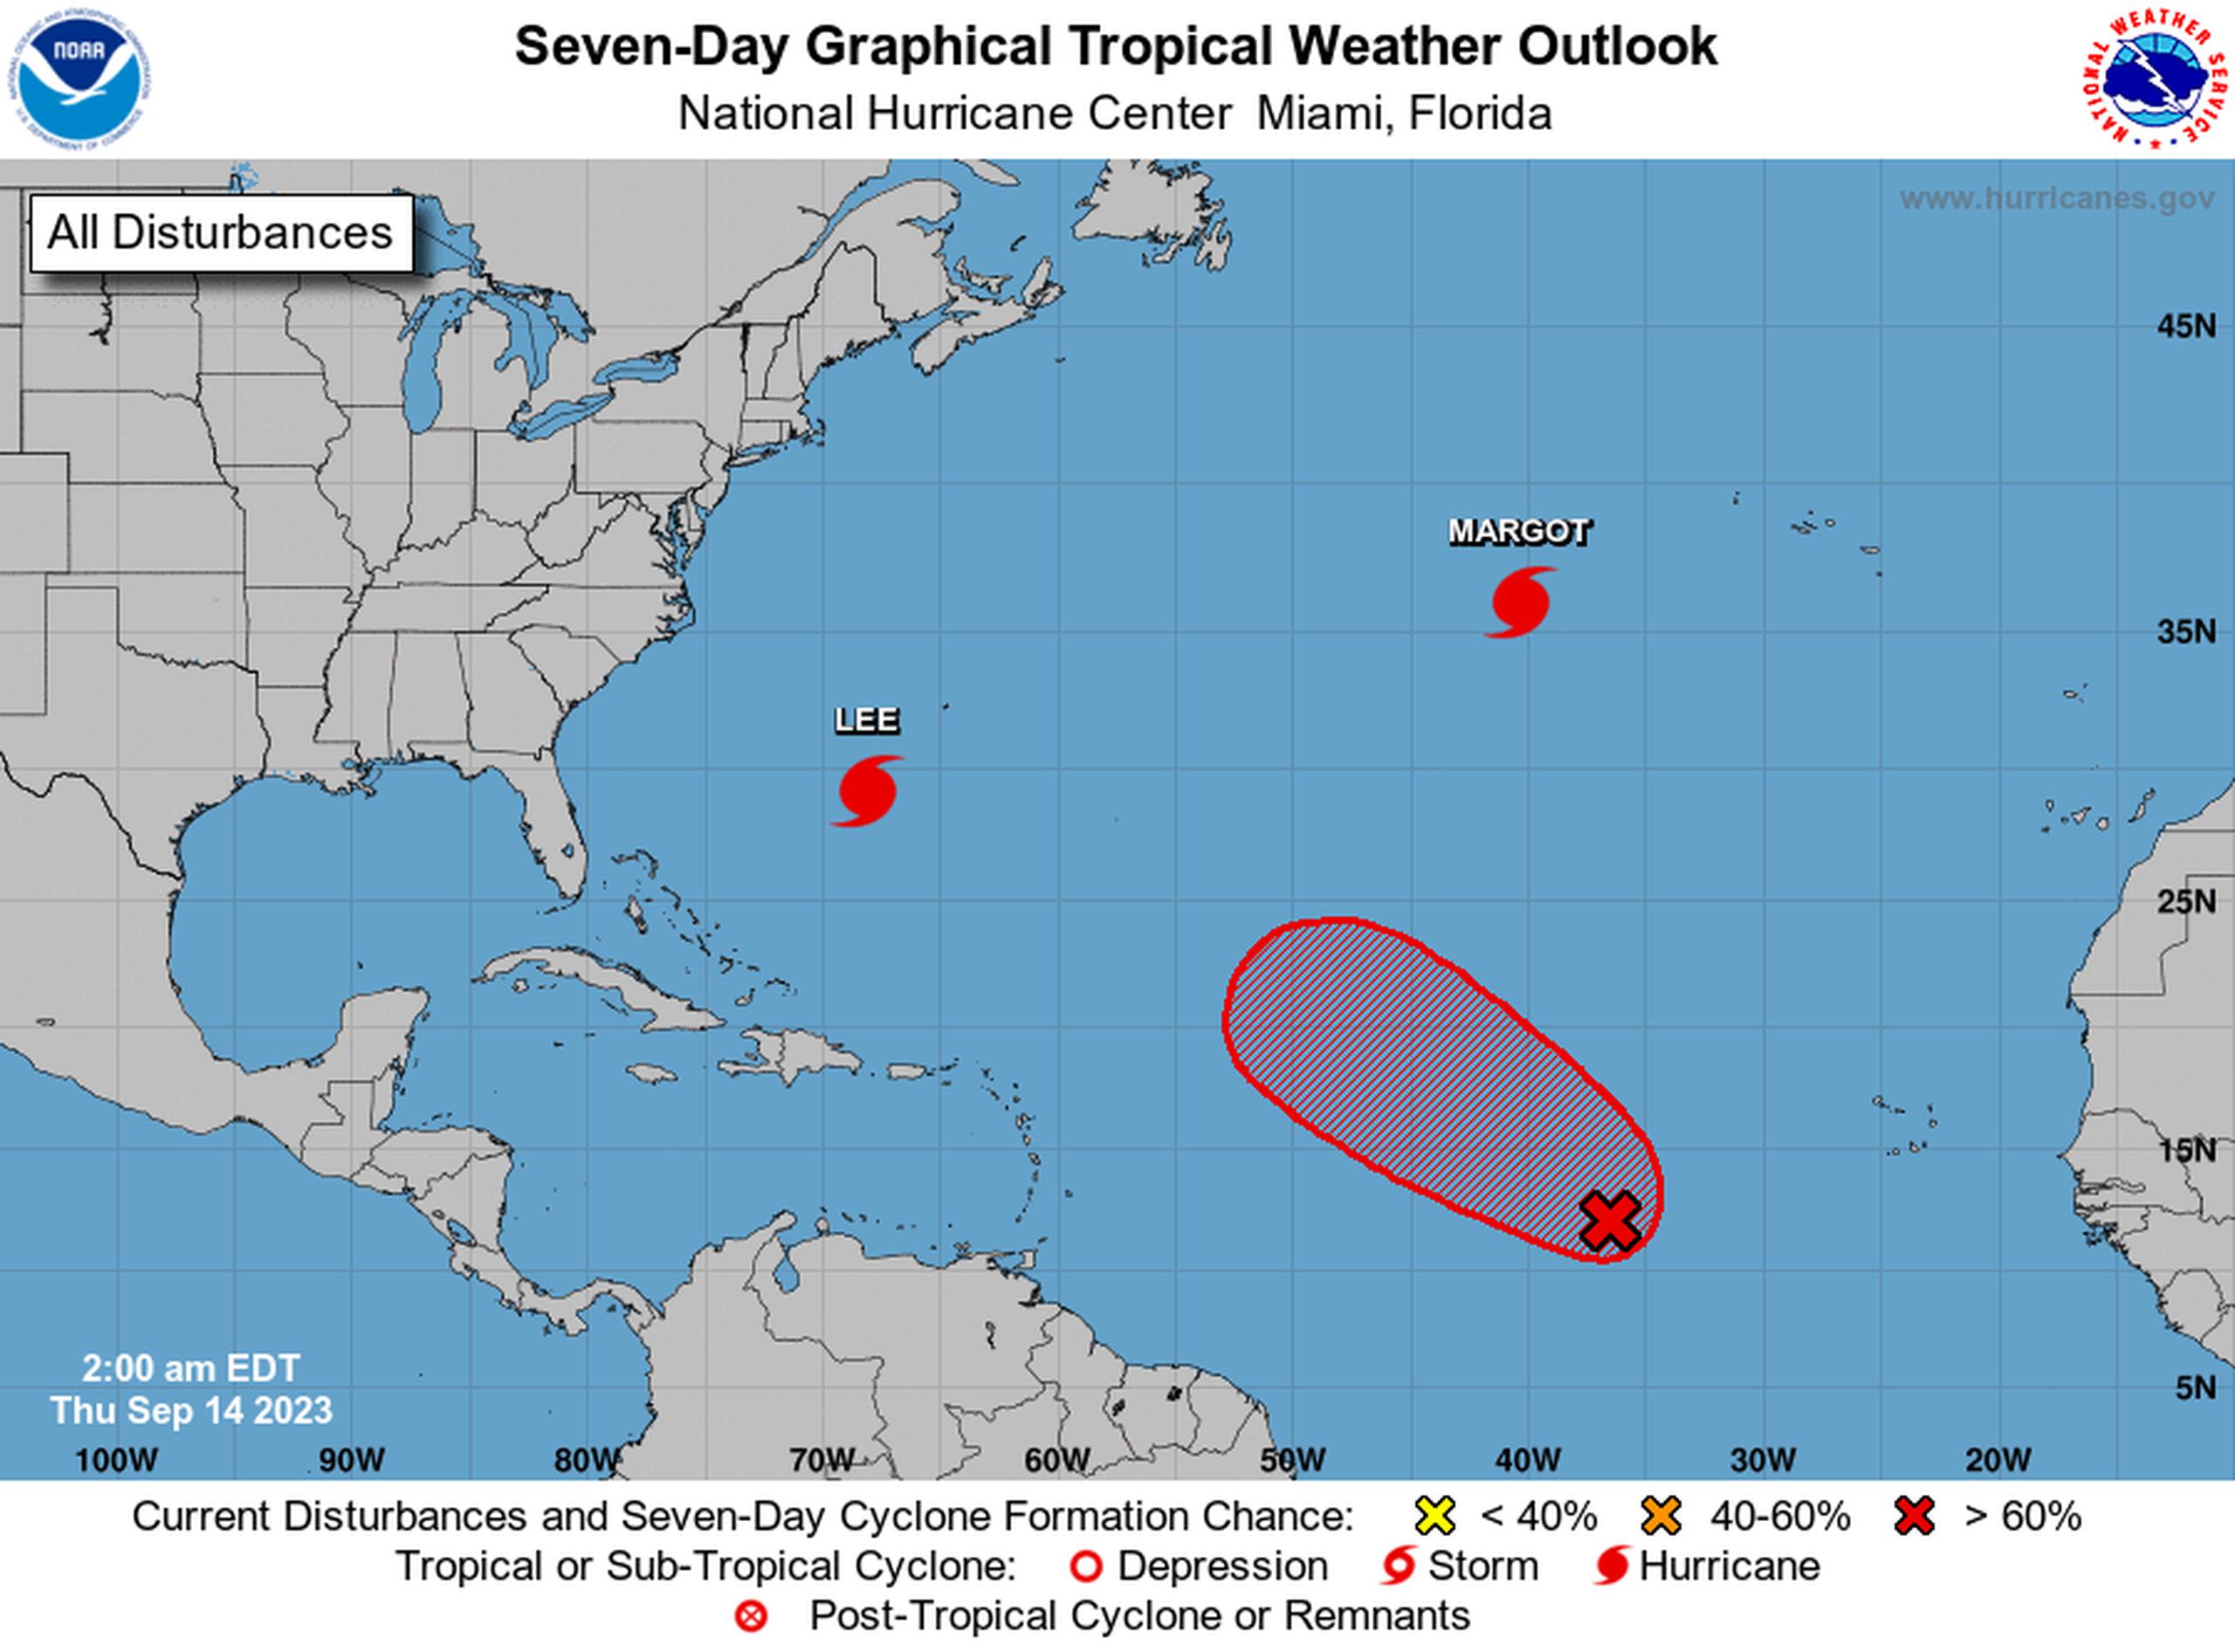 Perspectiva gráfica del clima tropical del Atlántico para siete días del Centro Nacional de Huracanes en Miami.